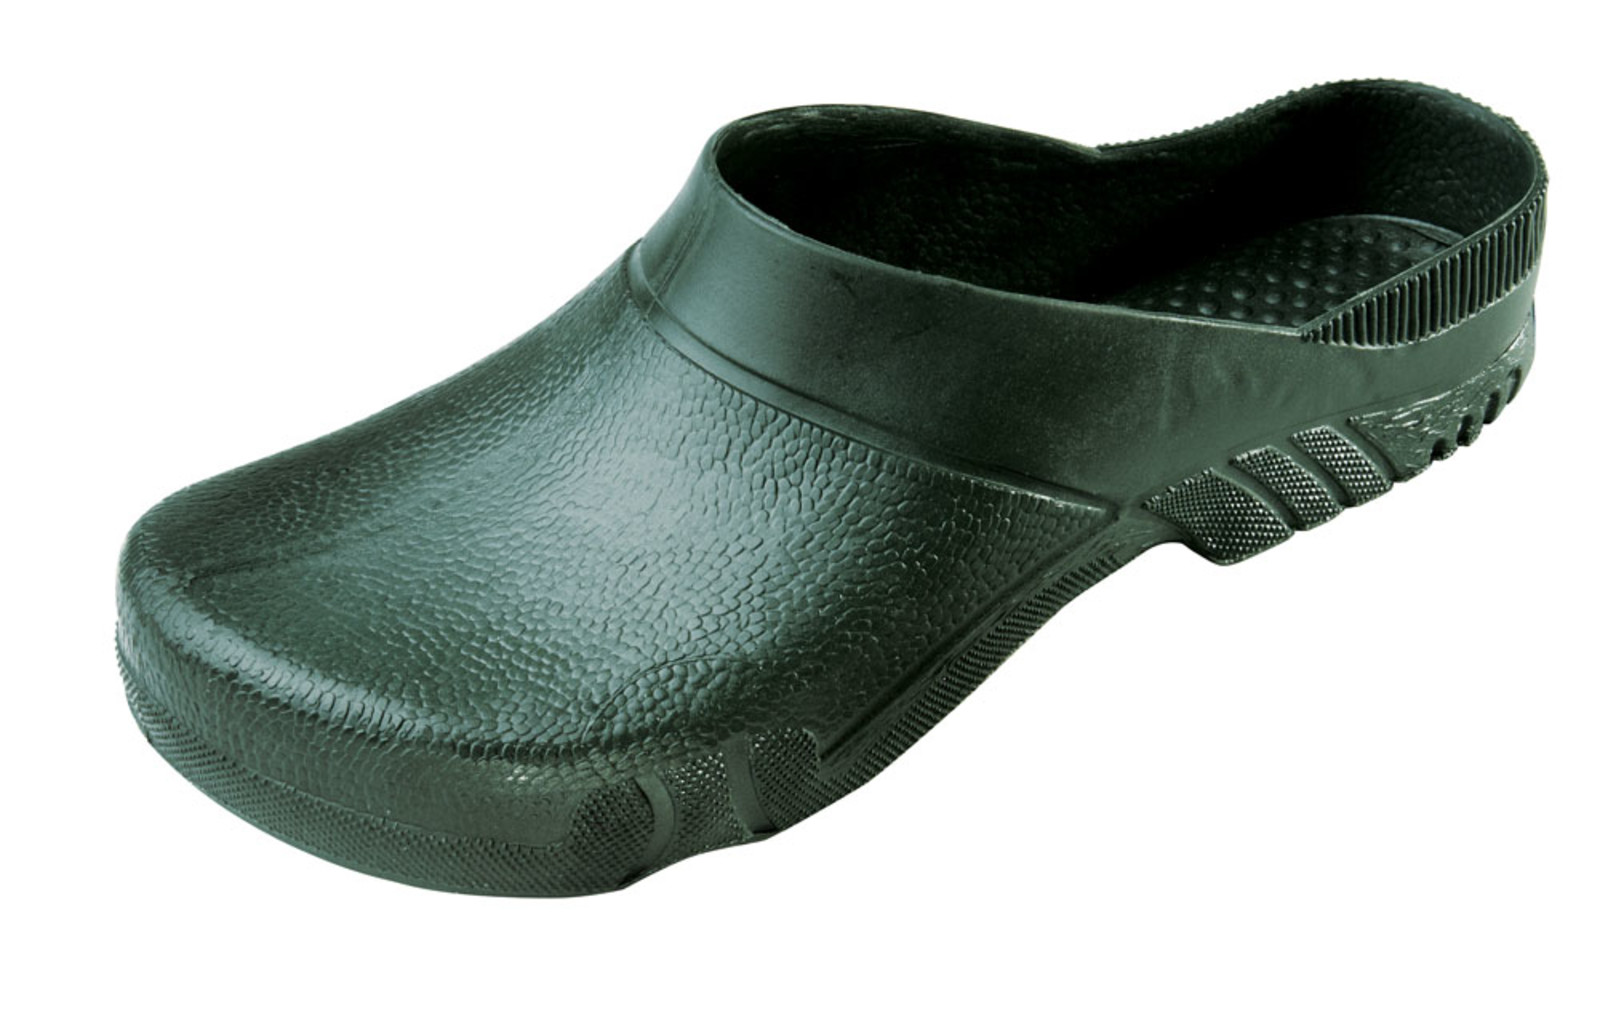 Galoše Boots Birba  - veľkosť: 35-36, farba: olivová zelená